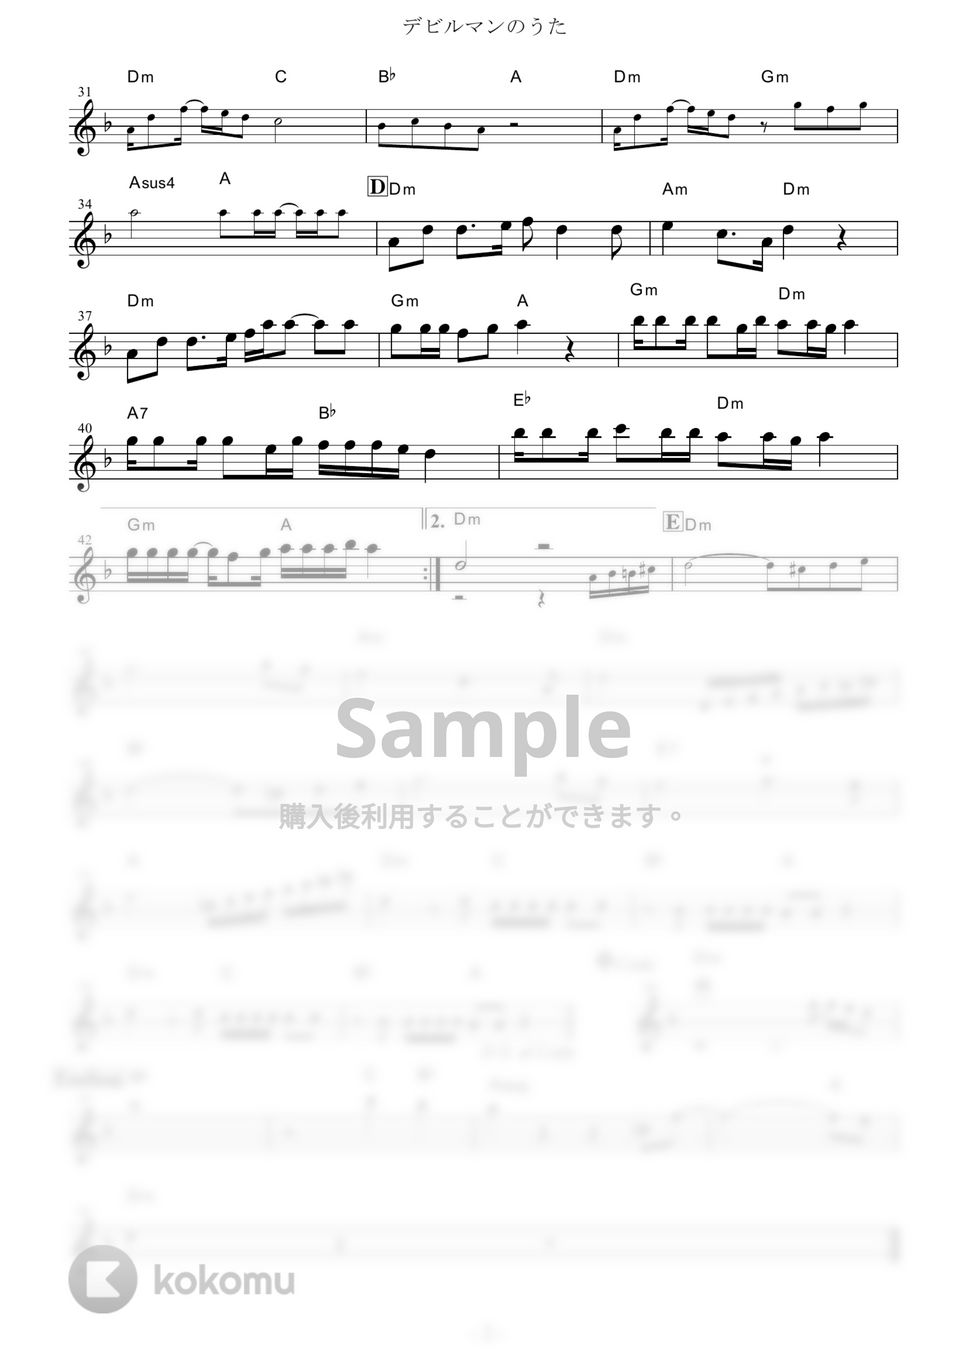 十田敬三、ボーカル・ショップ - デビルマンのうた (『デビルマン』 / in Eb) by muta-sax